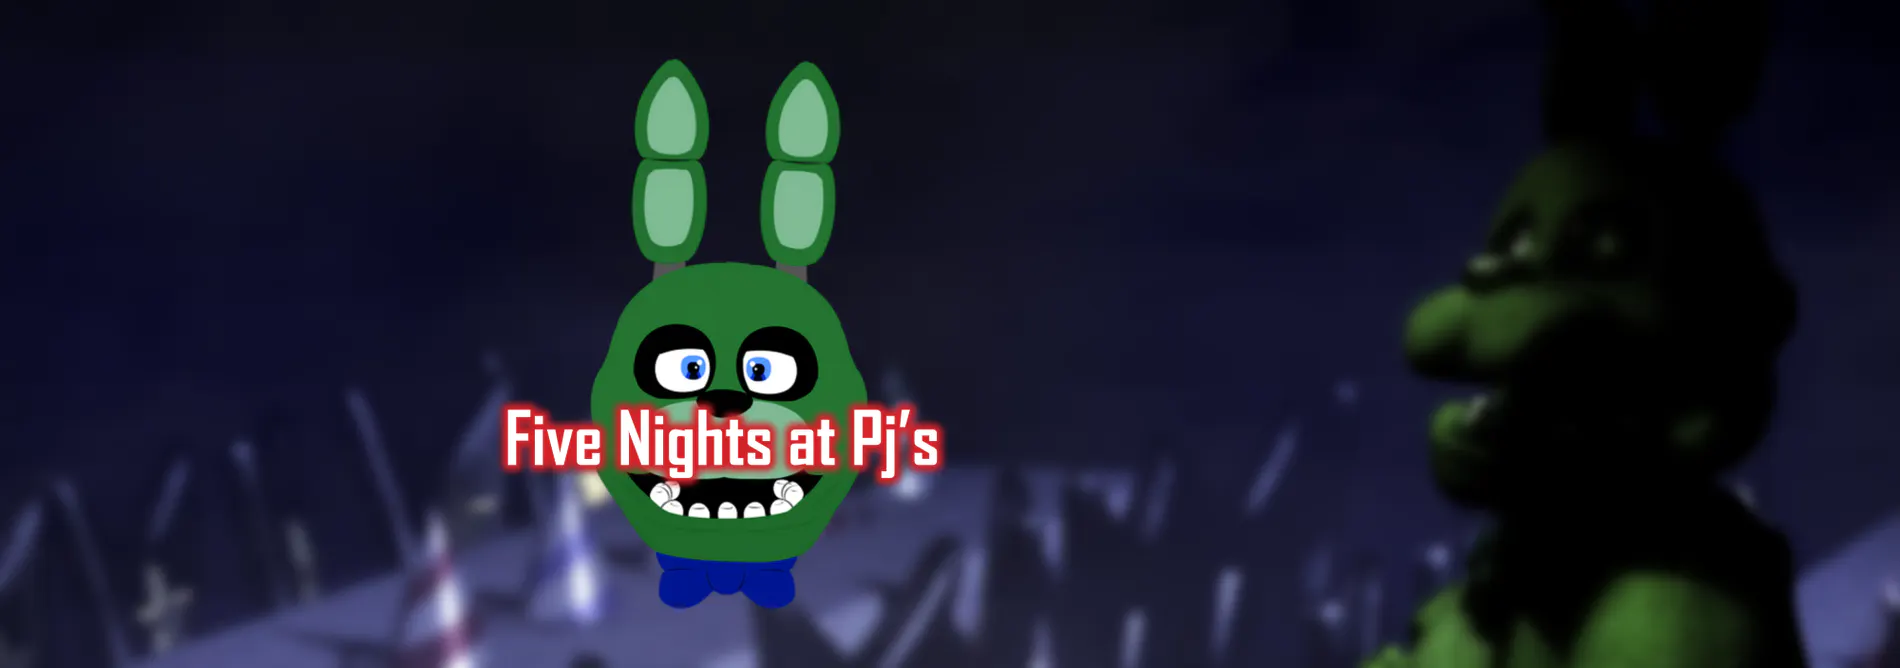 Five Nights at Pj's